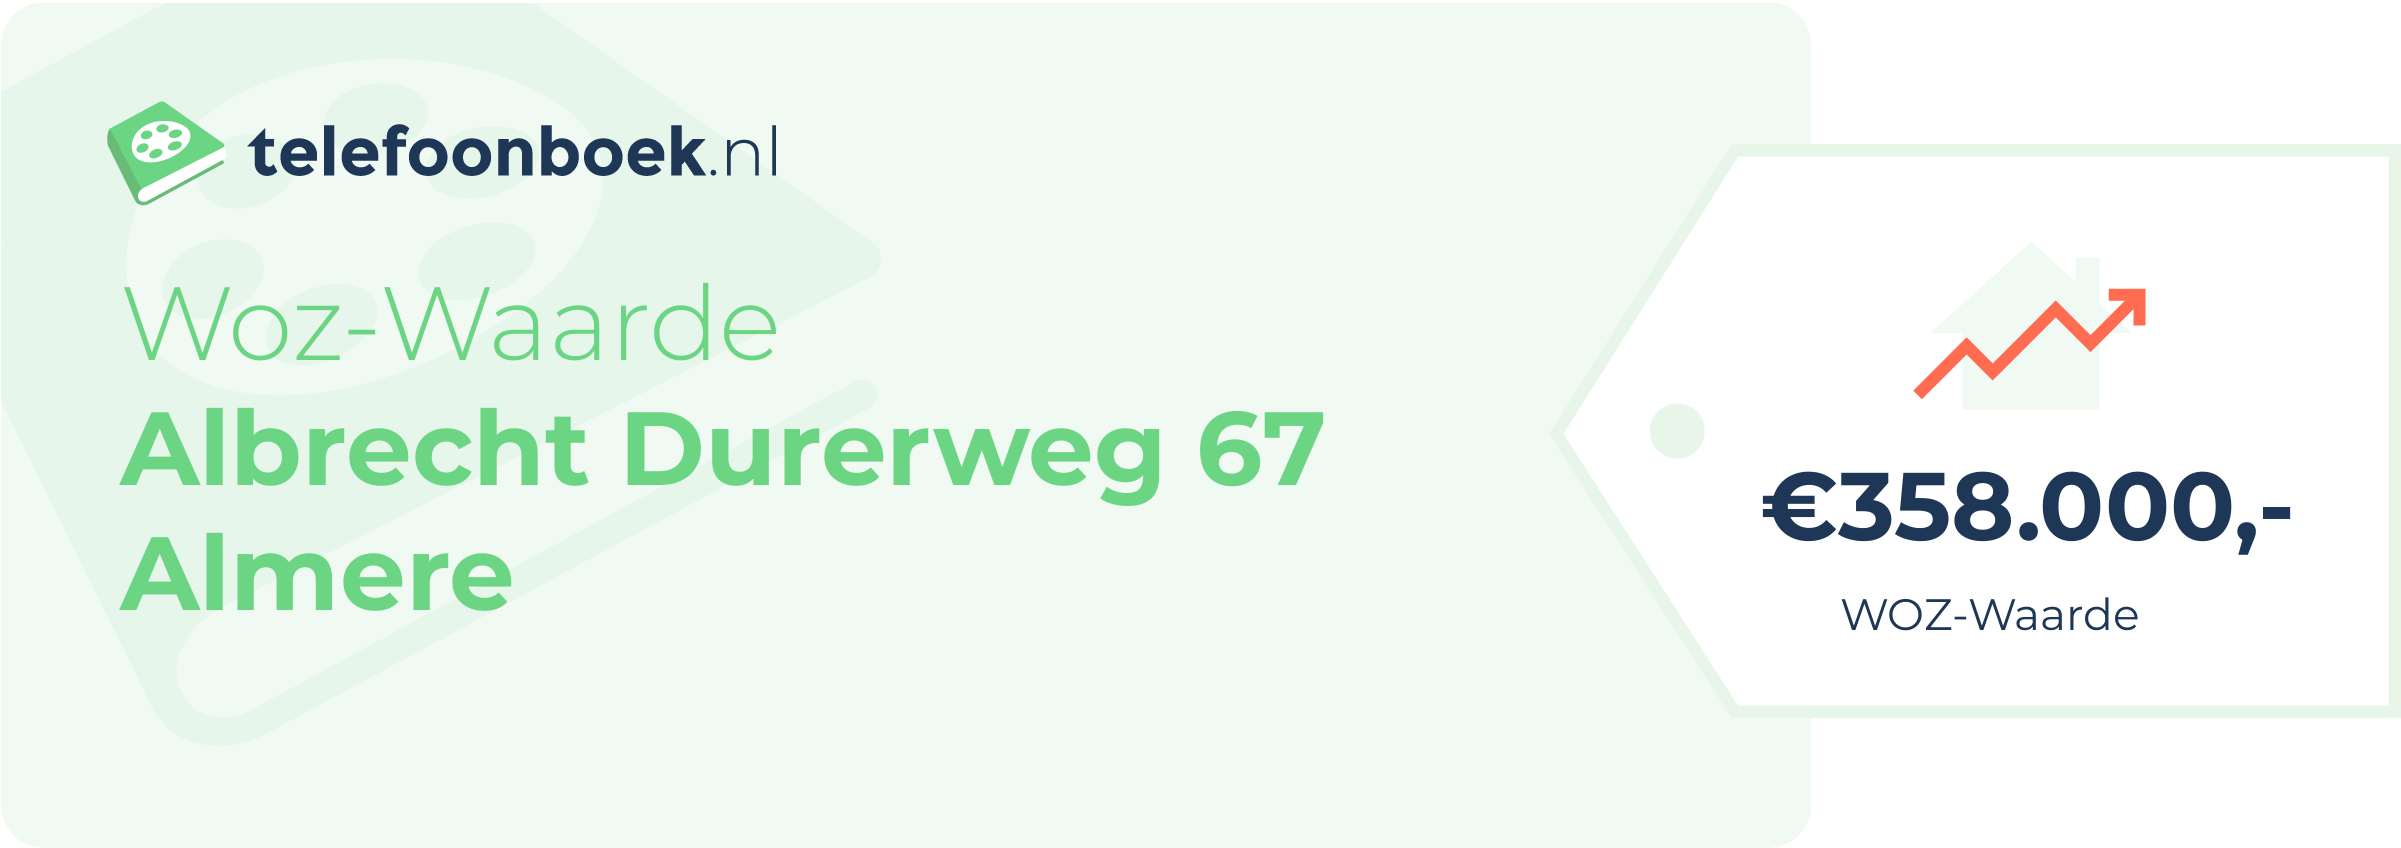 WOZ-waarde Albrecht Durerweg 67 Almere